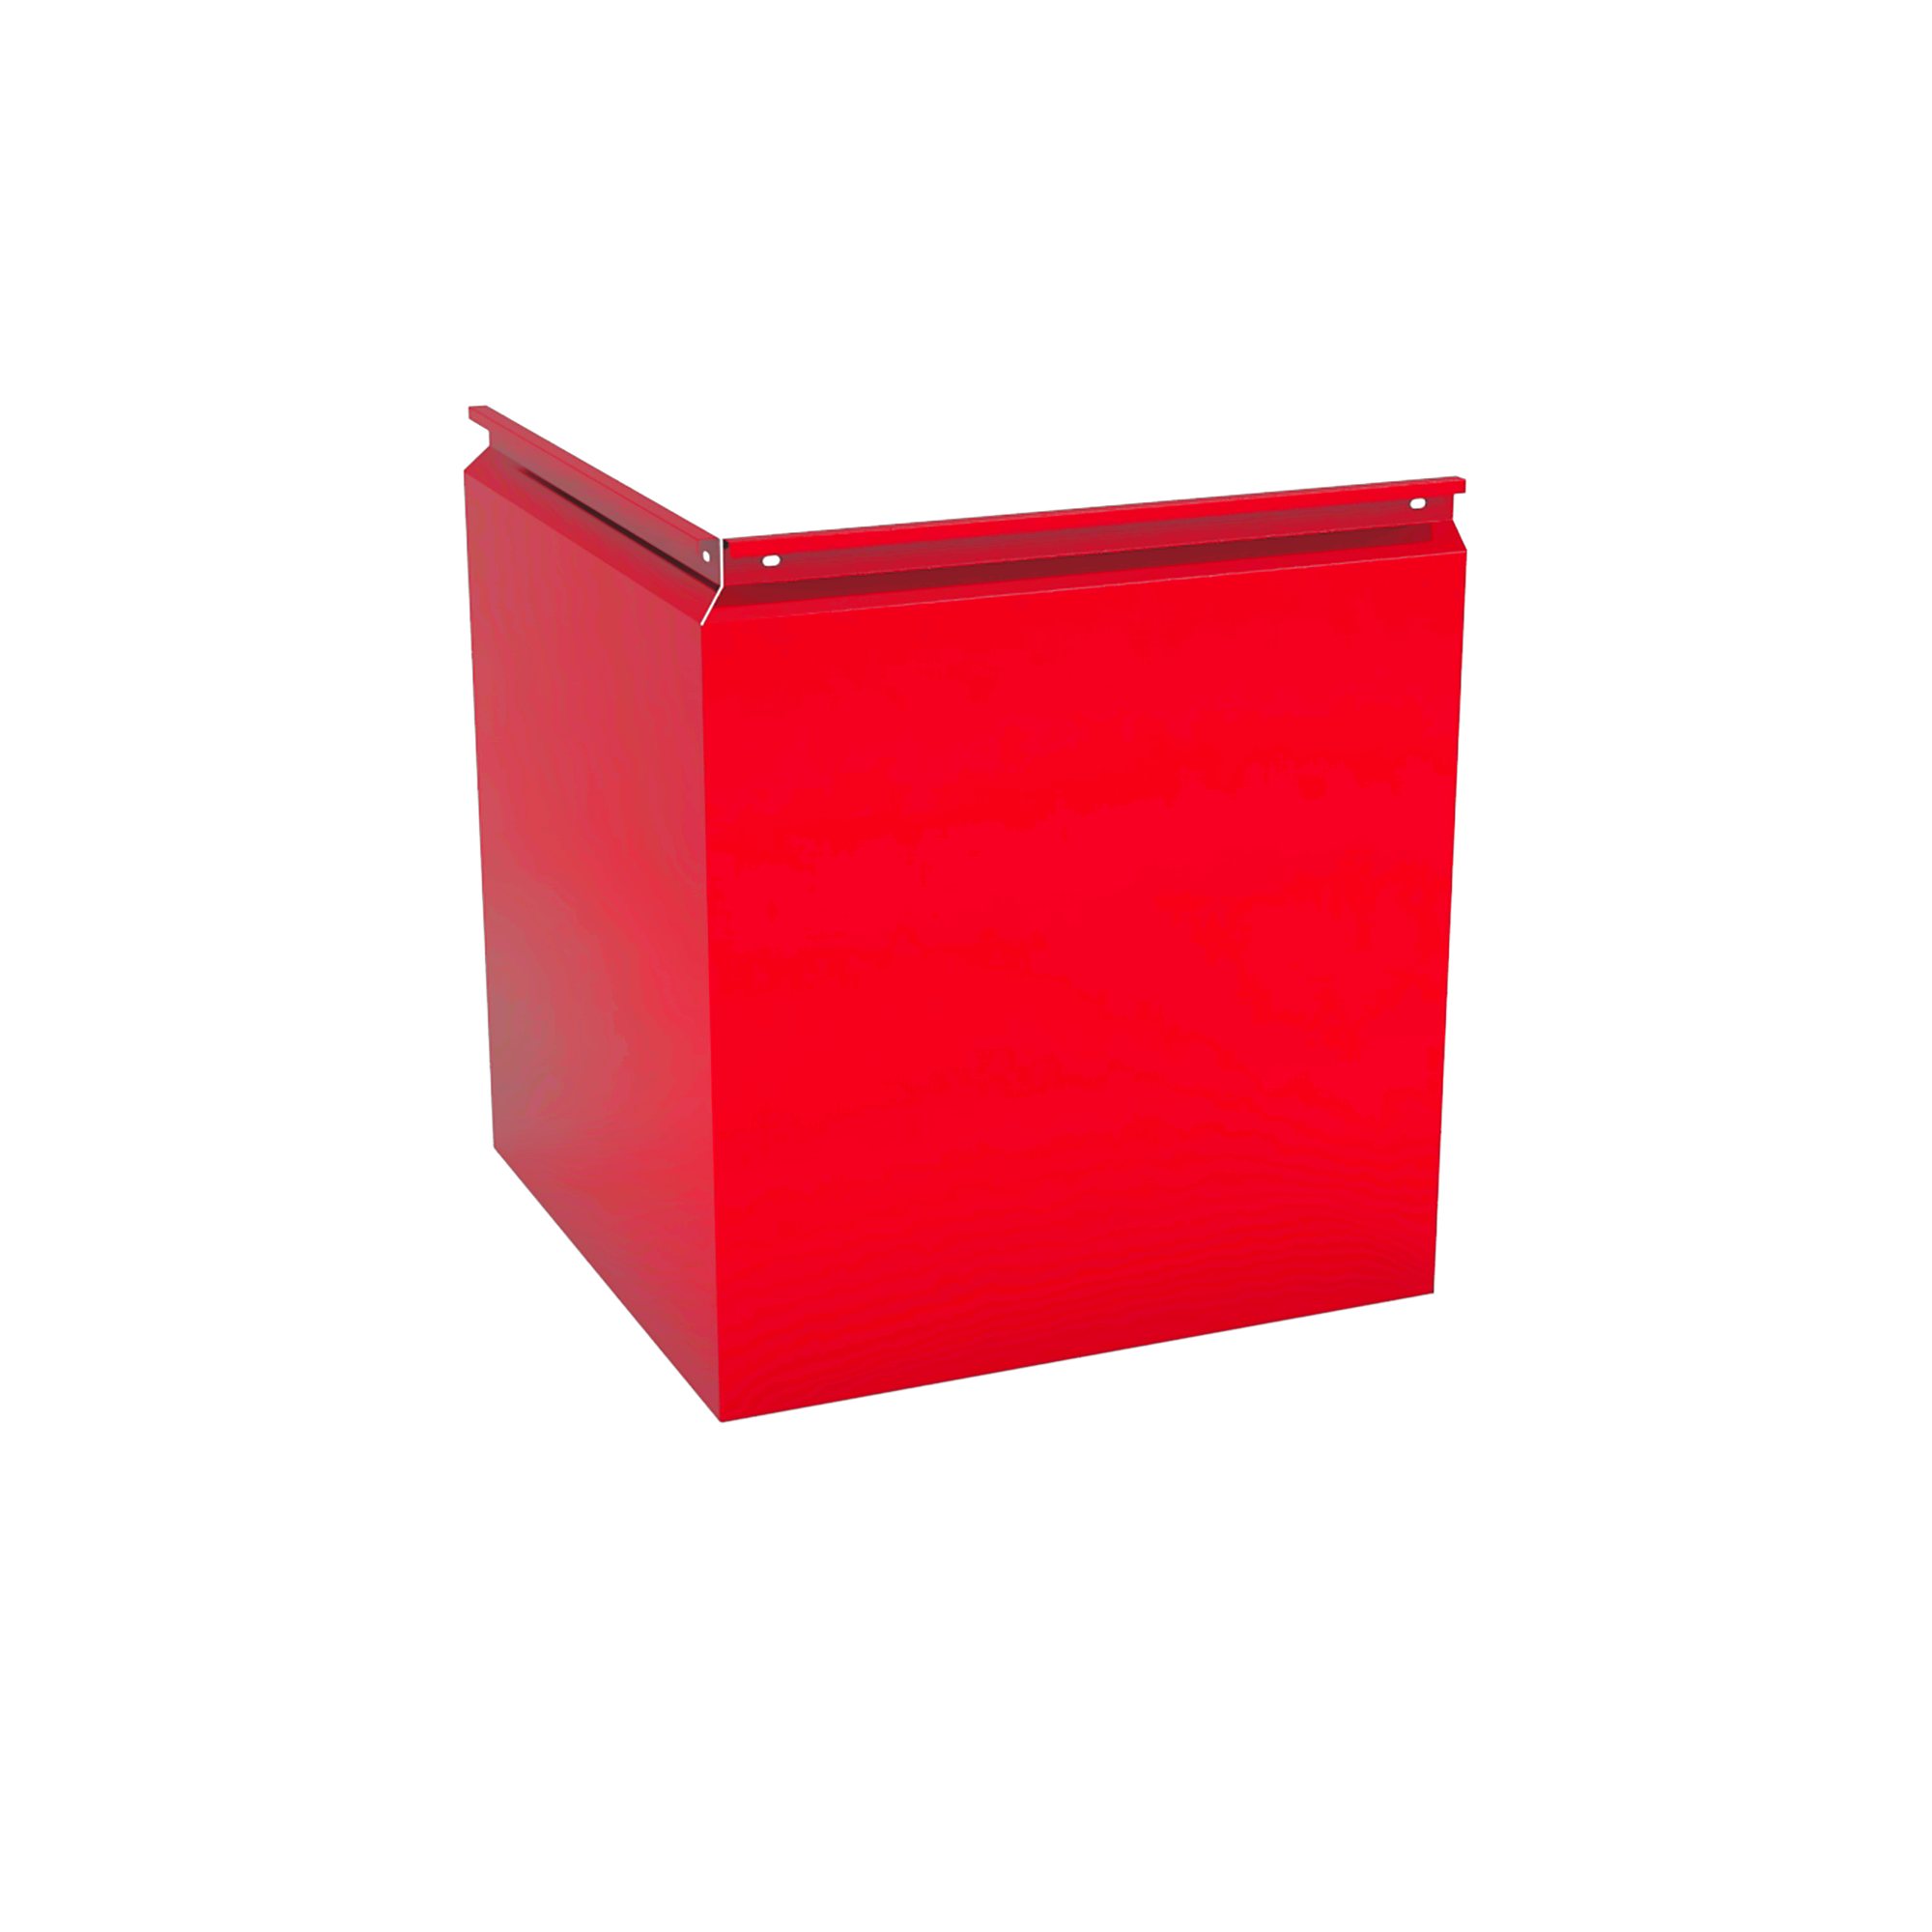 Фасадная кассета Угловая 340 Транспортный красный 0,65 мм Фасадные кассеты Кровля Сервис